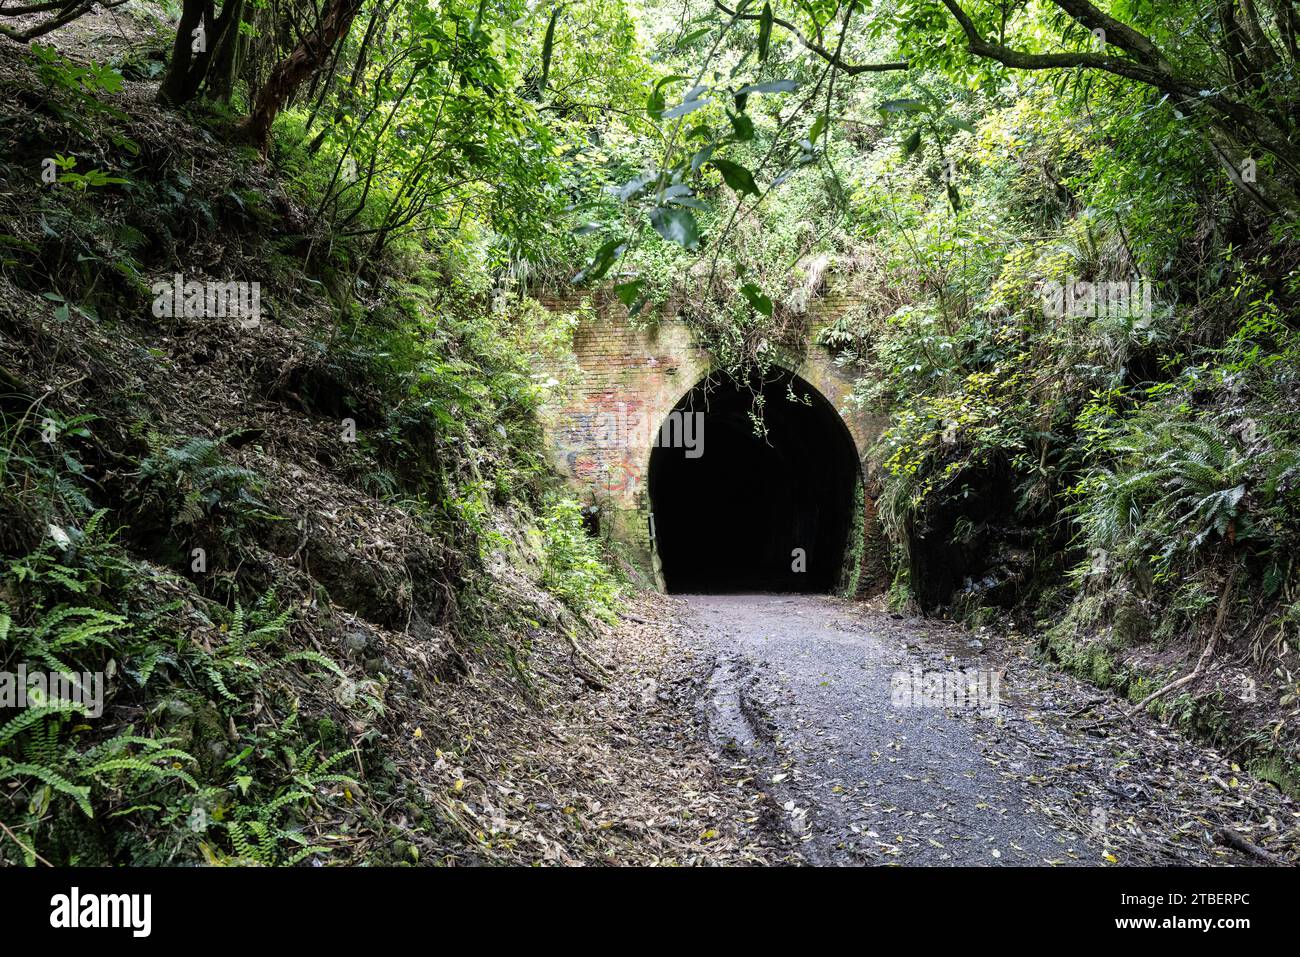 Road trip autour de l'île du Sud de la Nouvelle-Zélande. Photographié au southland Railway tunnel. Faites une courte promenade pittoresque à travers la réserve historique Banque D'Images